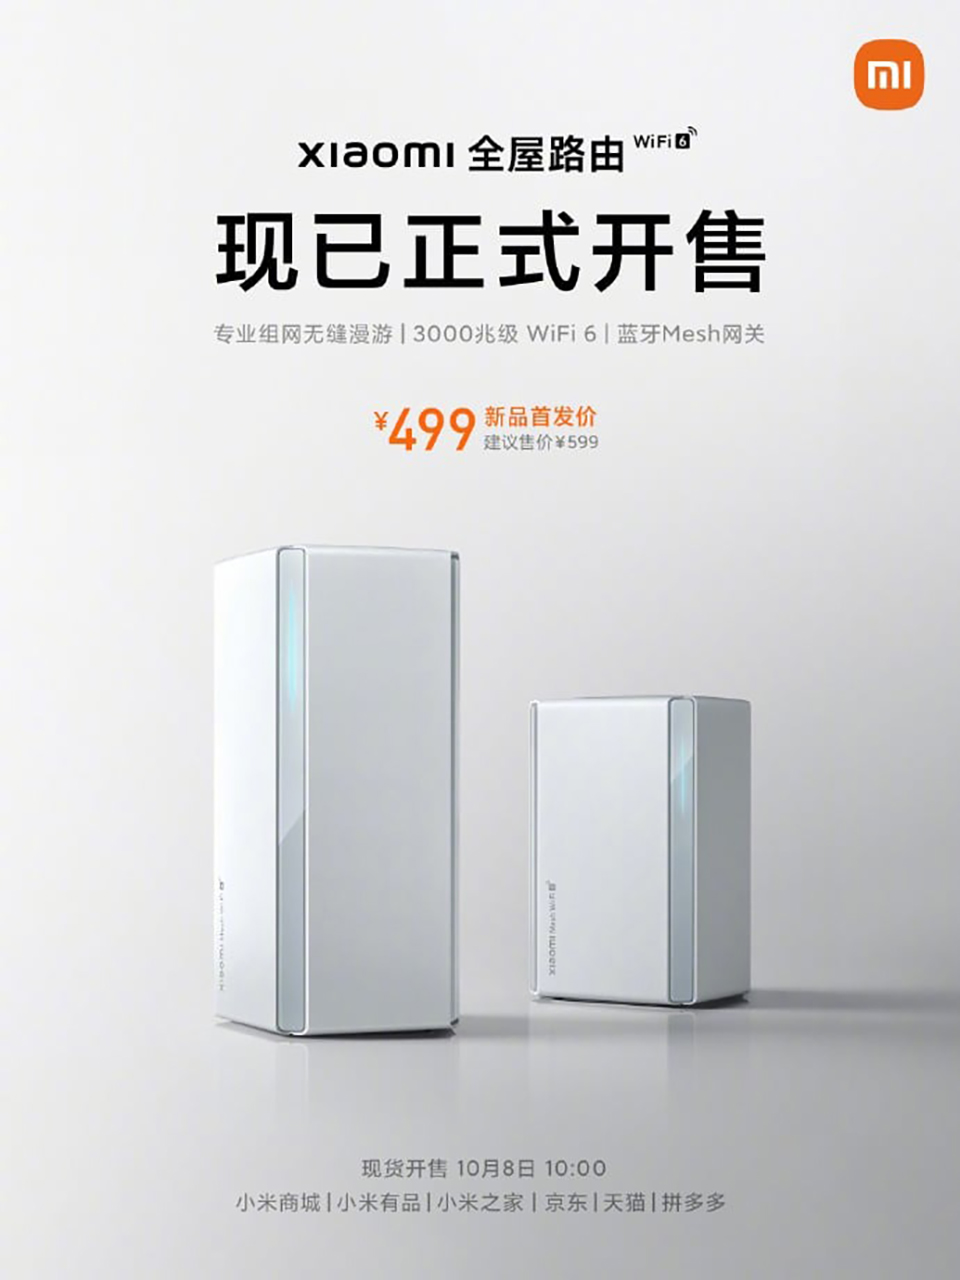 Xiaomi ra mắt combo router AX3000 dành cho gia đình